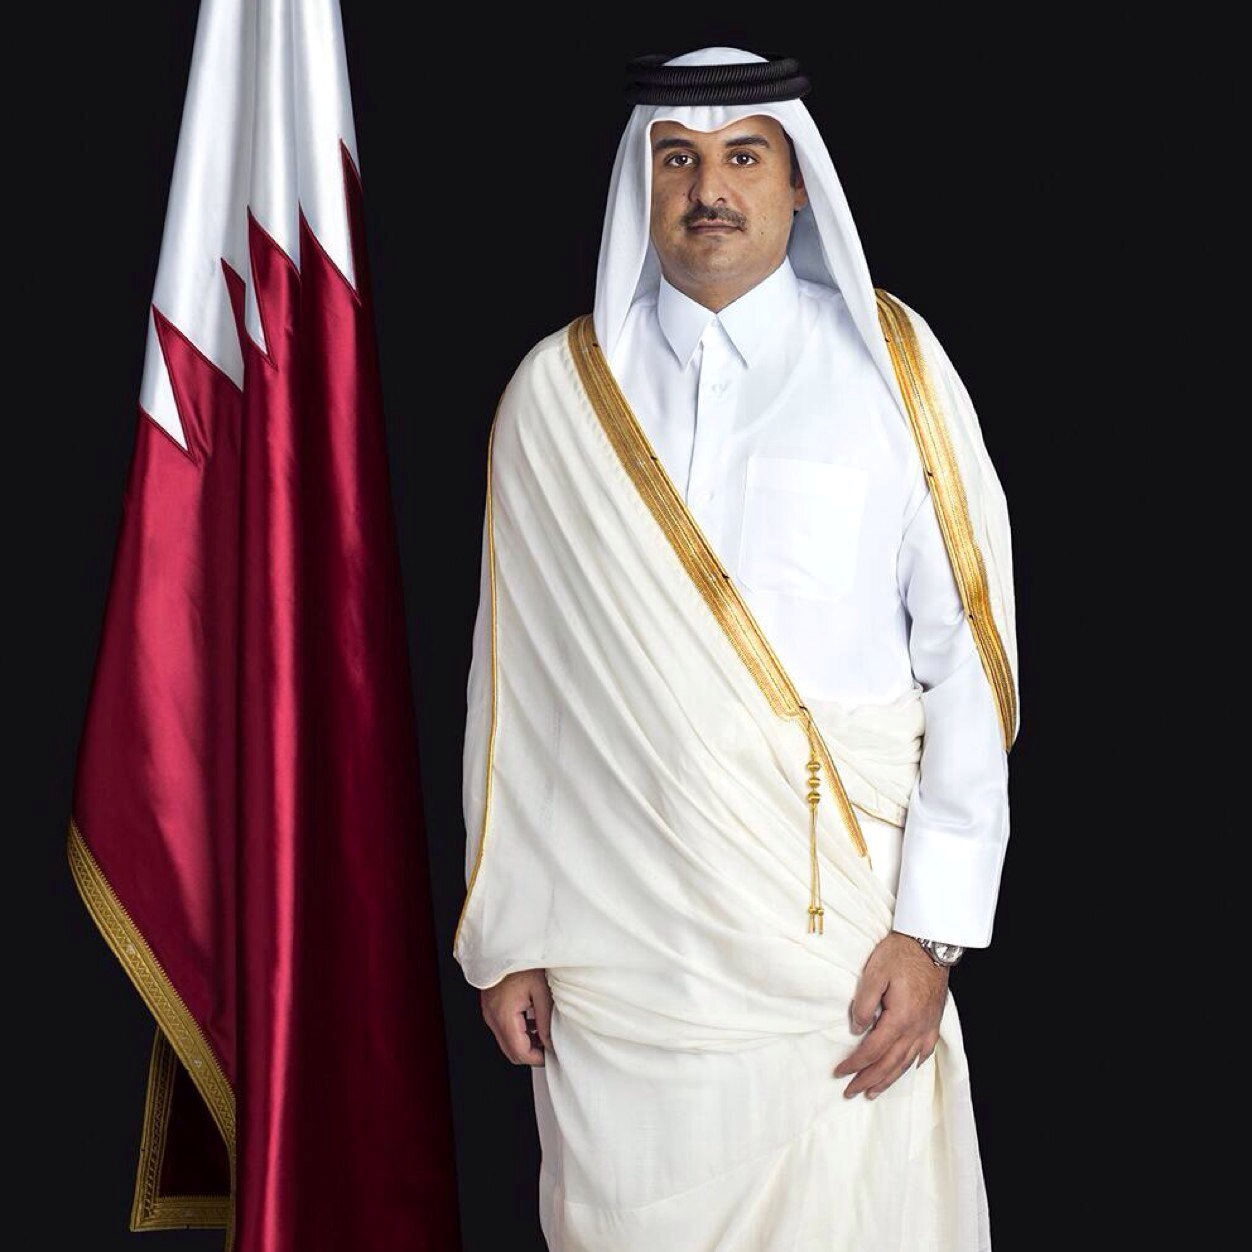 أمير قطر يلغي زيارته إلى موسكو بصورة مفاجئة